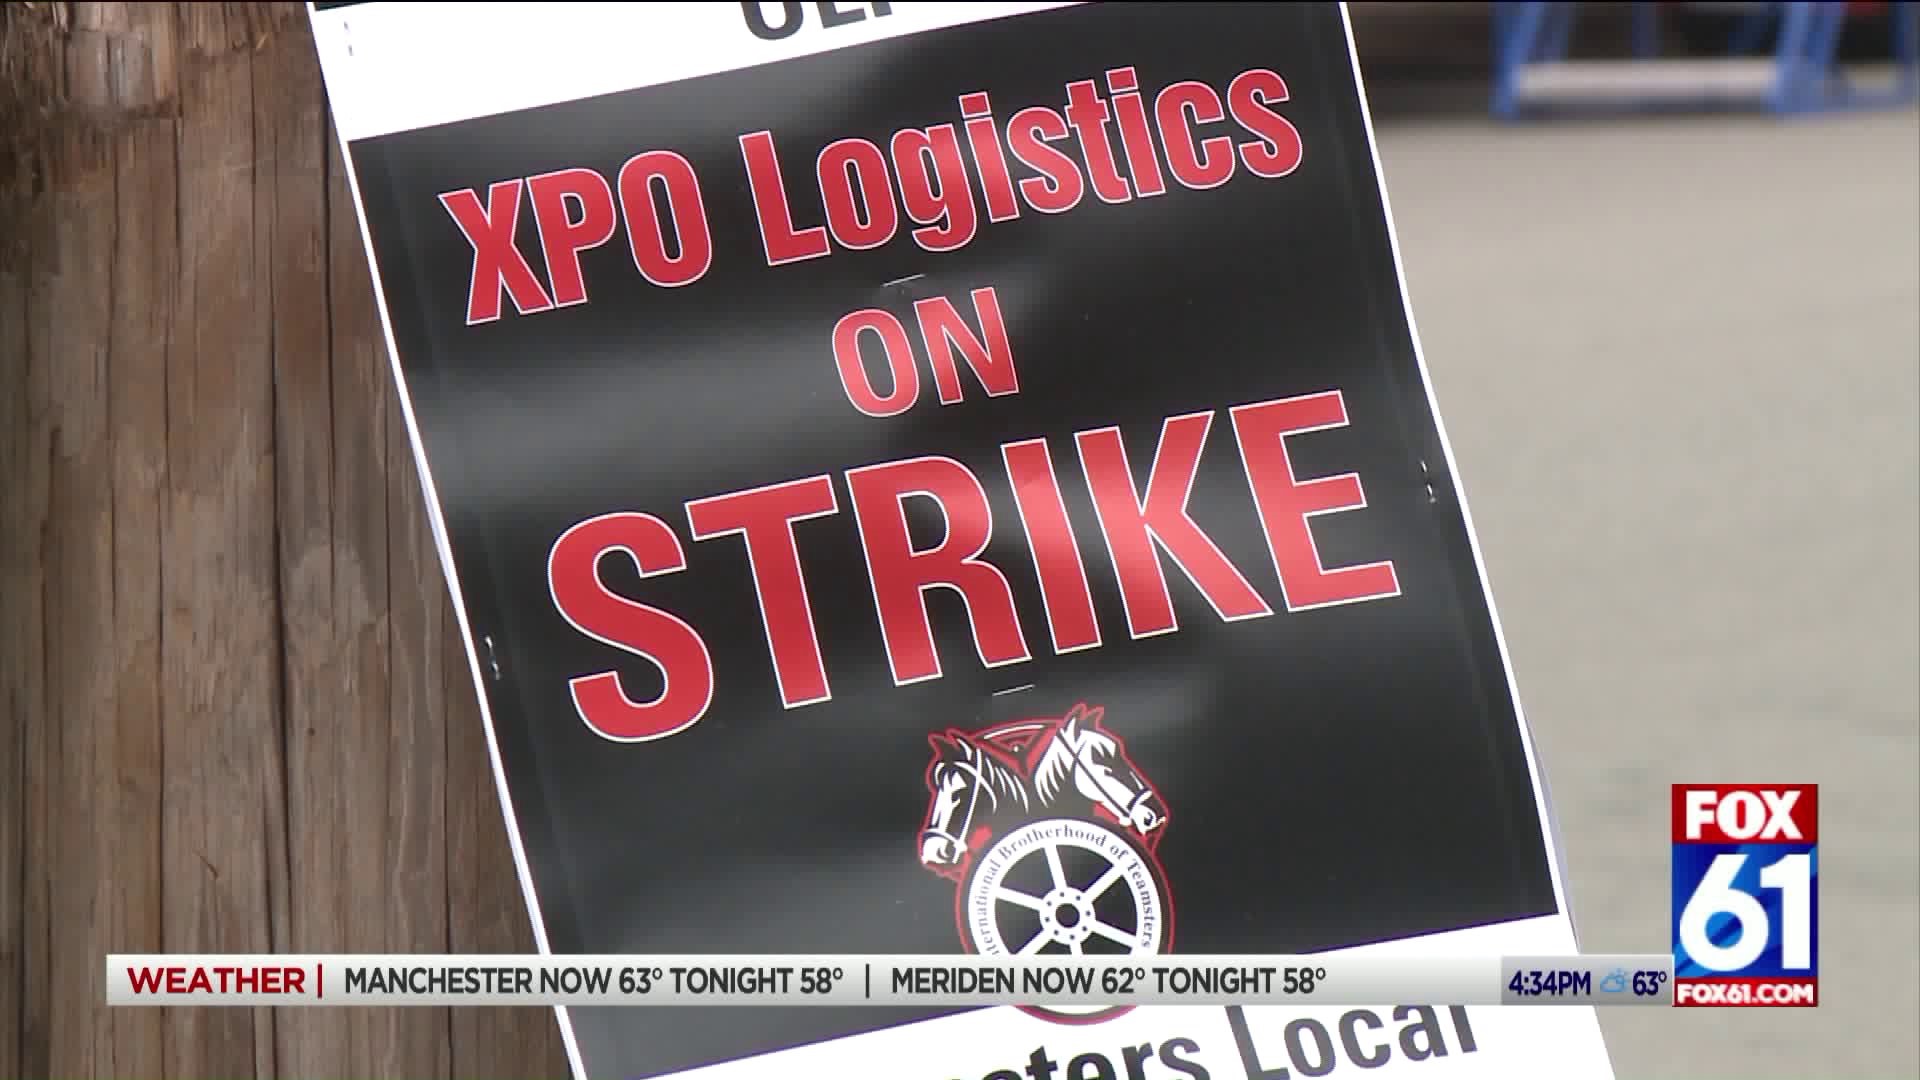 XPO Logistics on strike